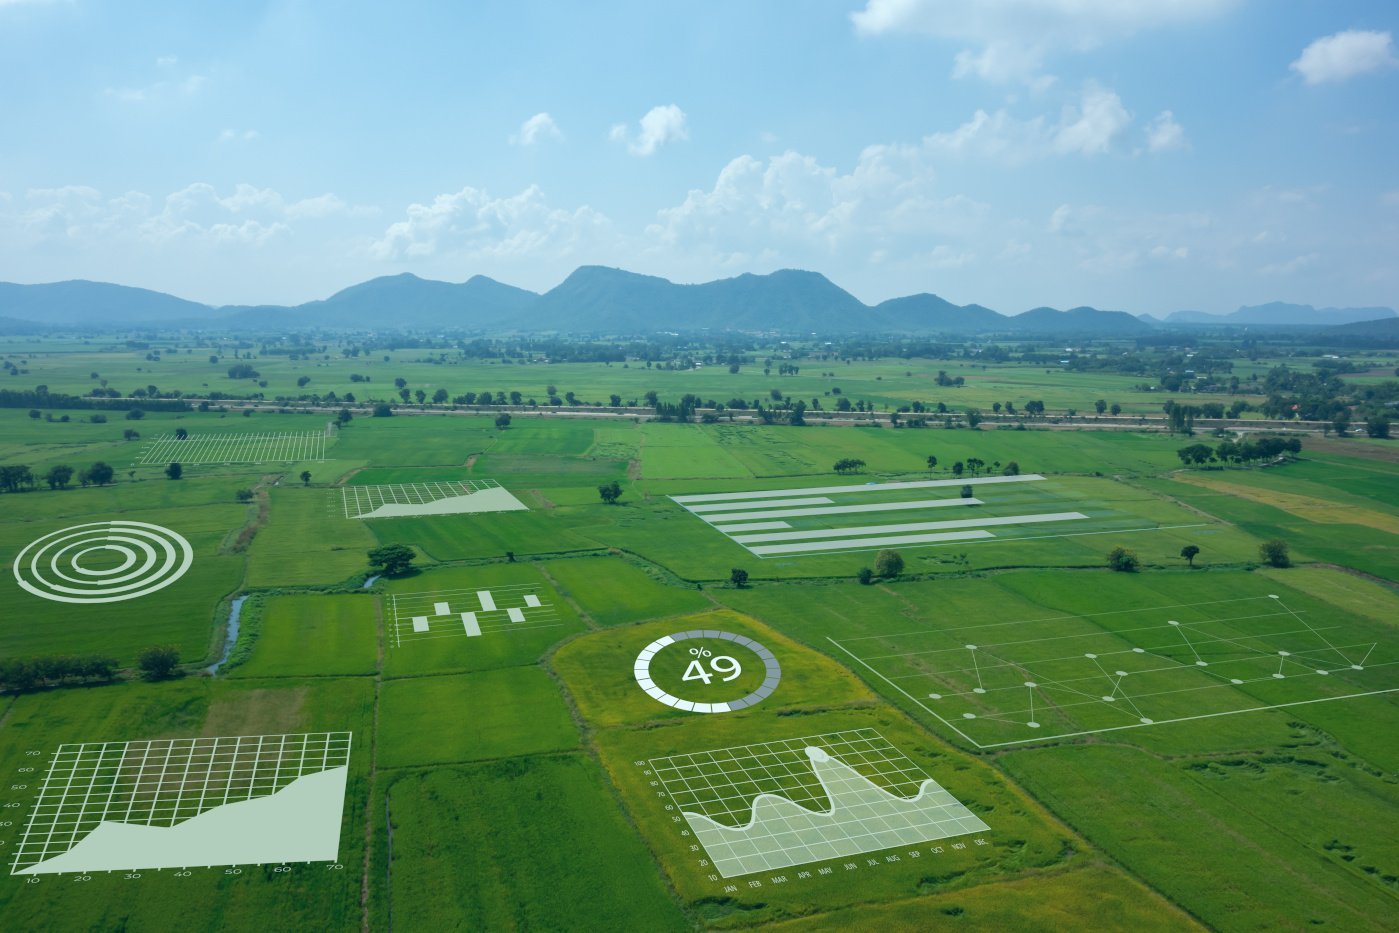 Blick von oben auf eine landwirtschaftliche Fläche, angereichert mit verschiedenen grafischen Elementen zum Thema Digitalisierung.